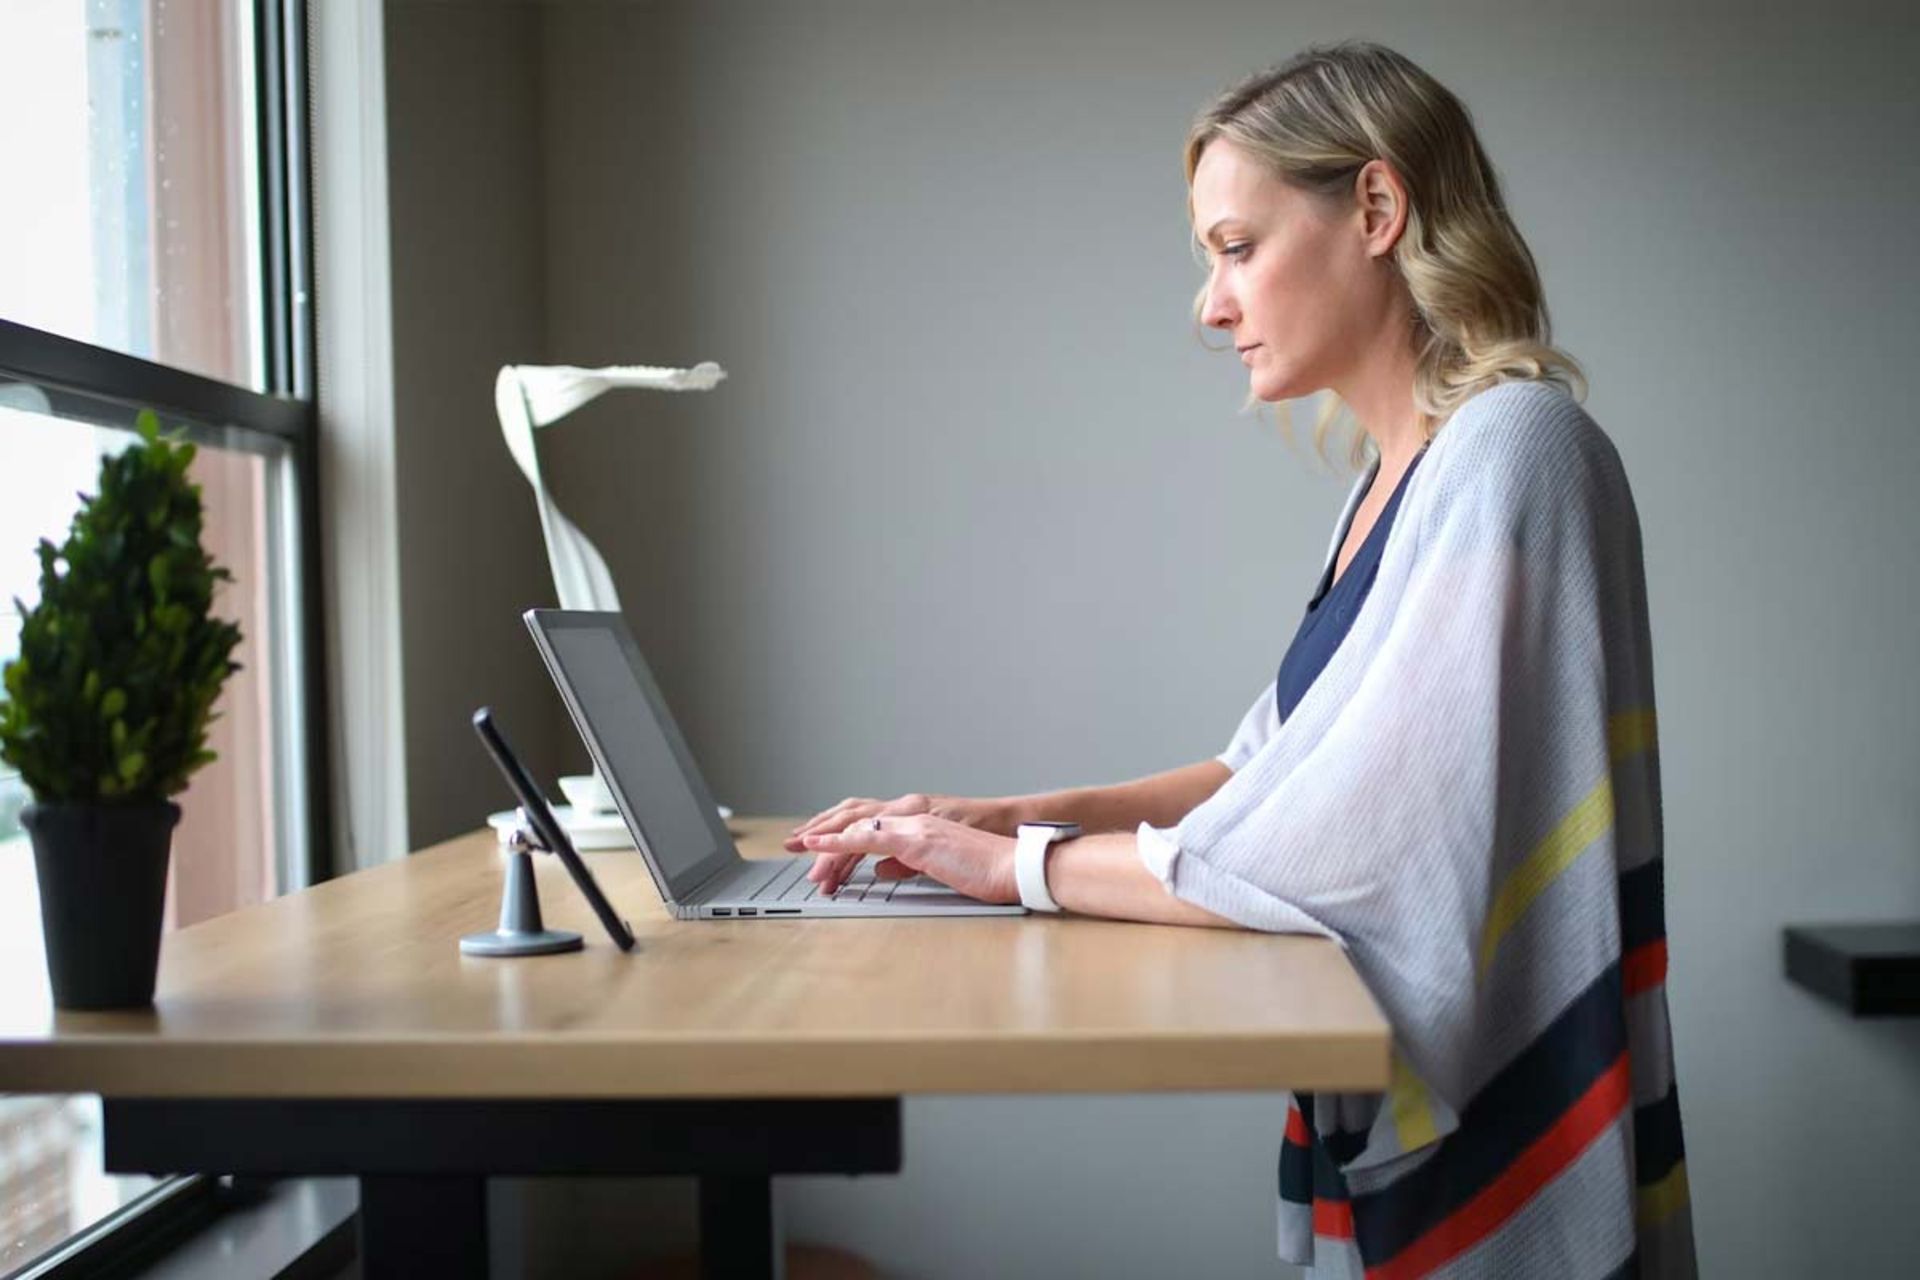 زنی با لباس سفید ایستاده در حال استفاده از لپ تاپ